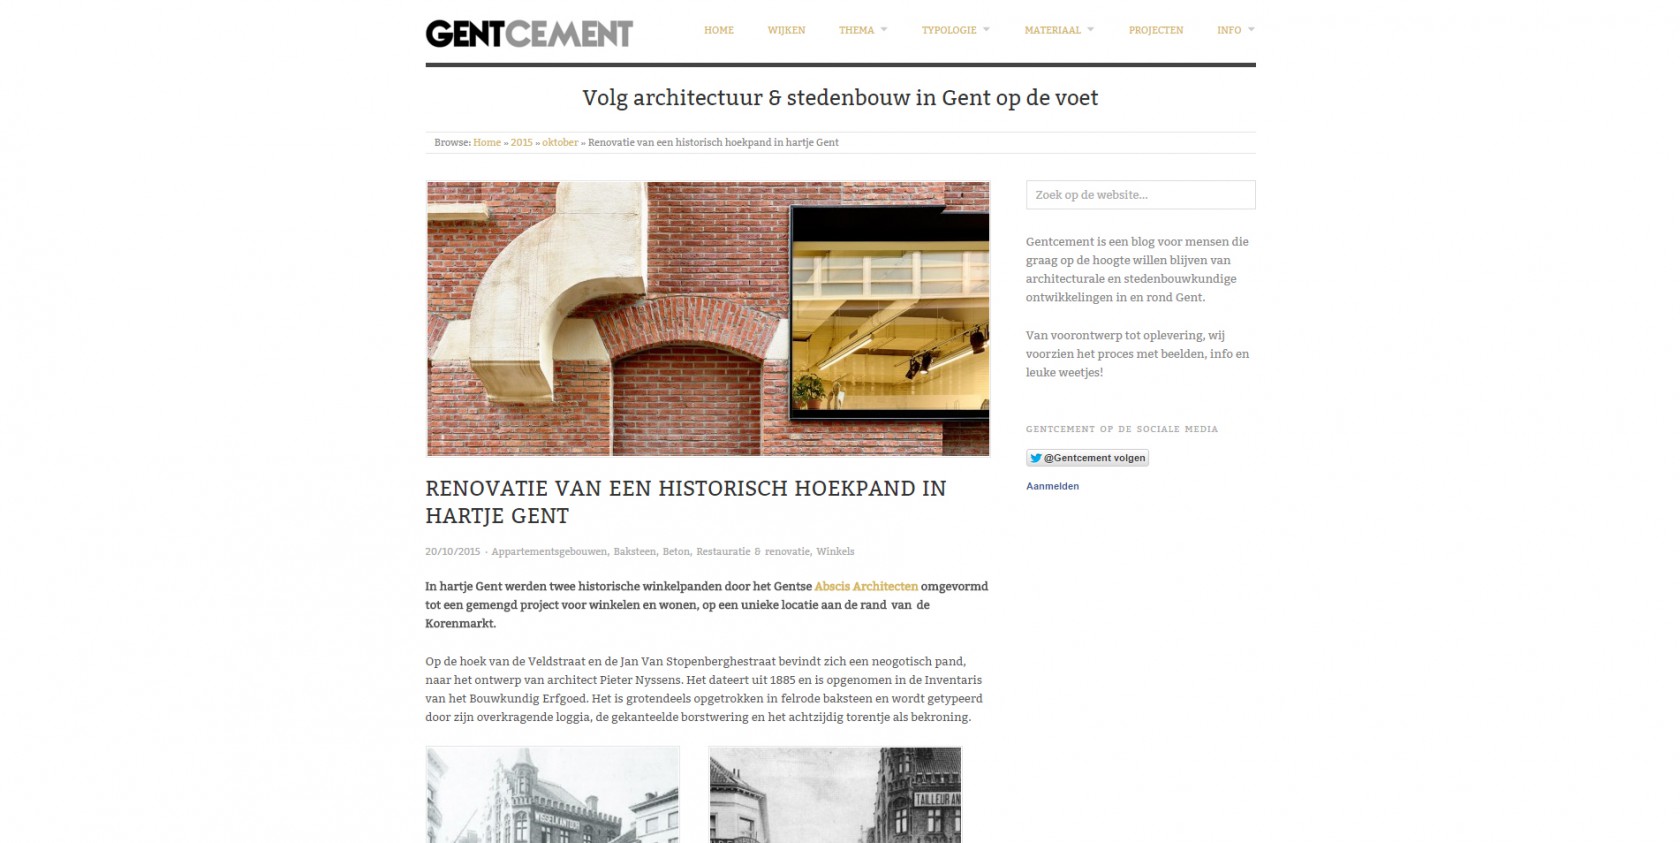 Abscis Architecten - Artikel volg architectuur en stedenbouw in Gent op de voet